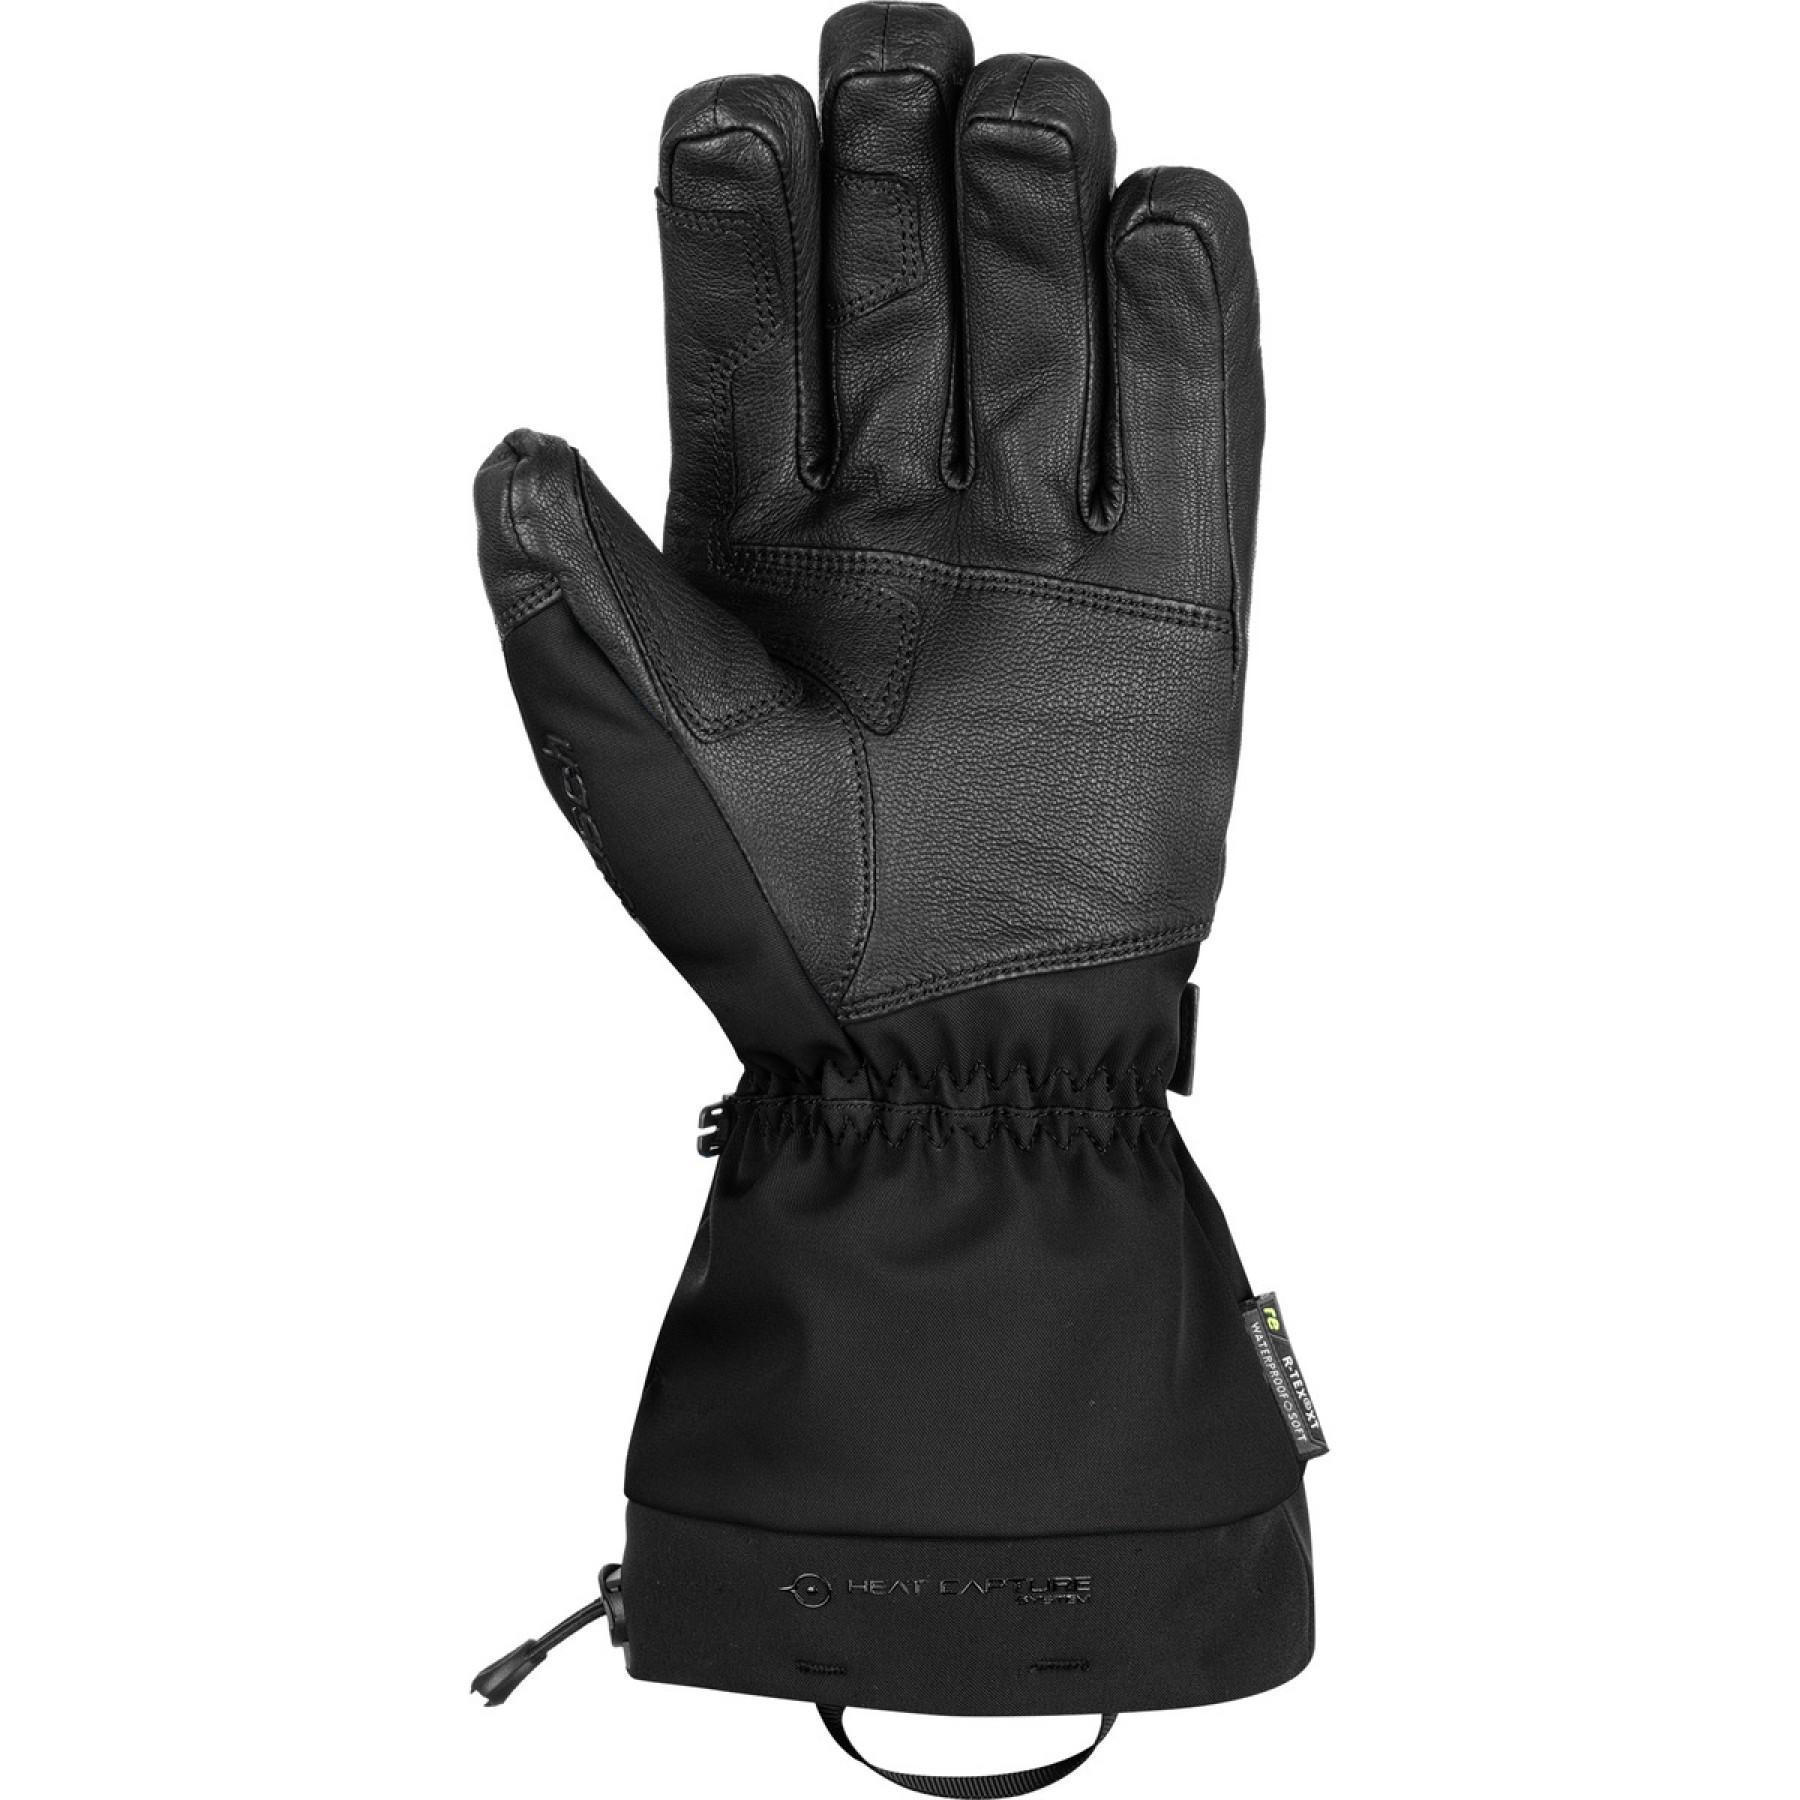 Gloves Reusch Explorer Pro R-tex® Pcr Xt Lc